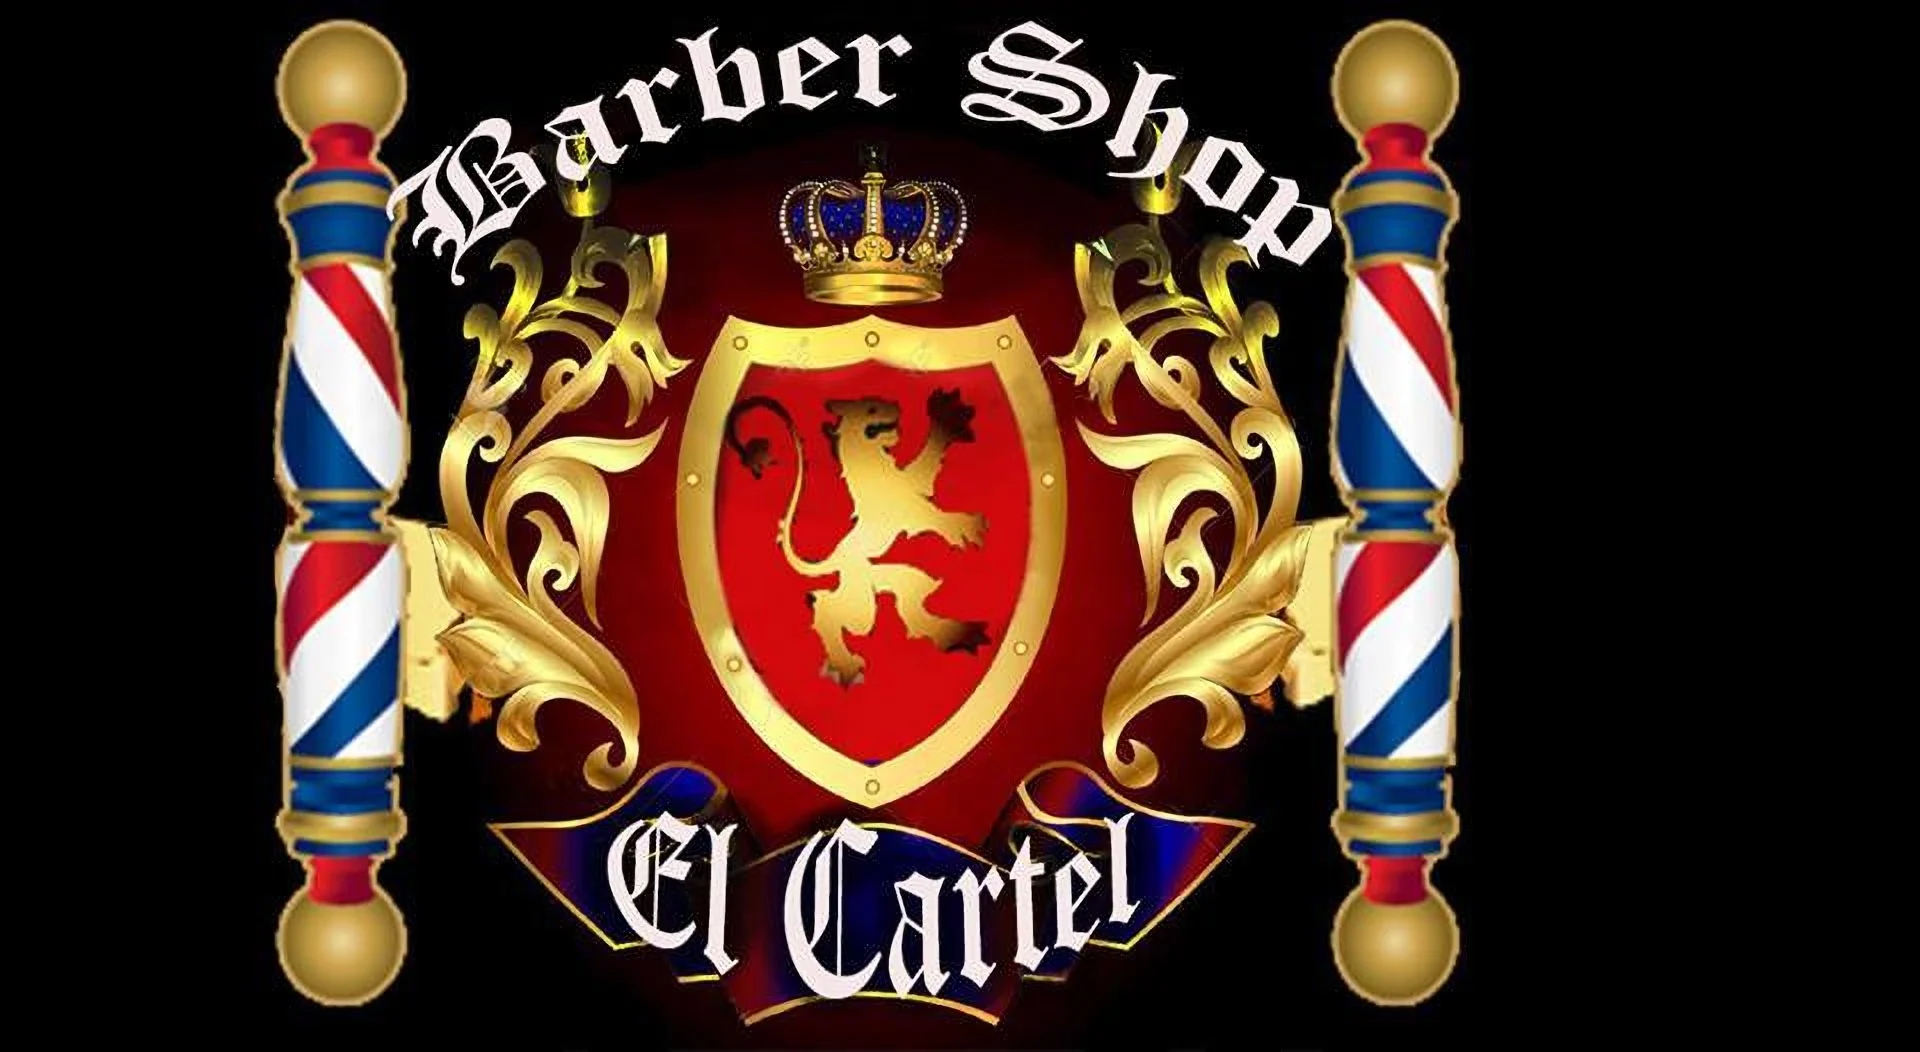 Barbería-el-cartel-barber-shop-9400